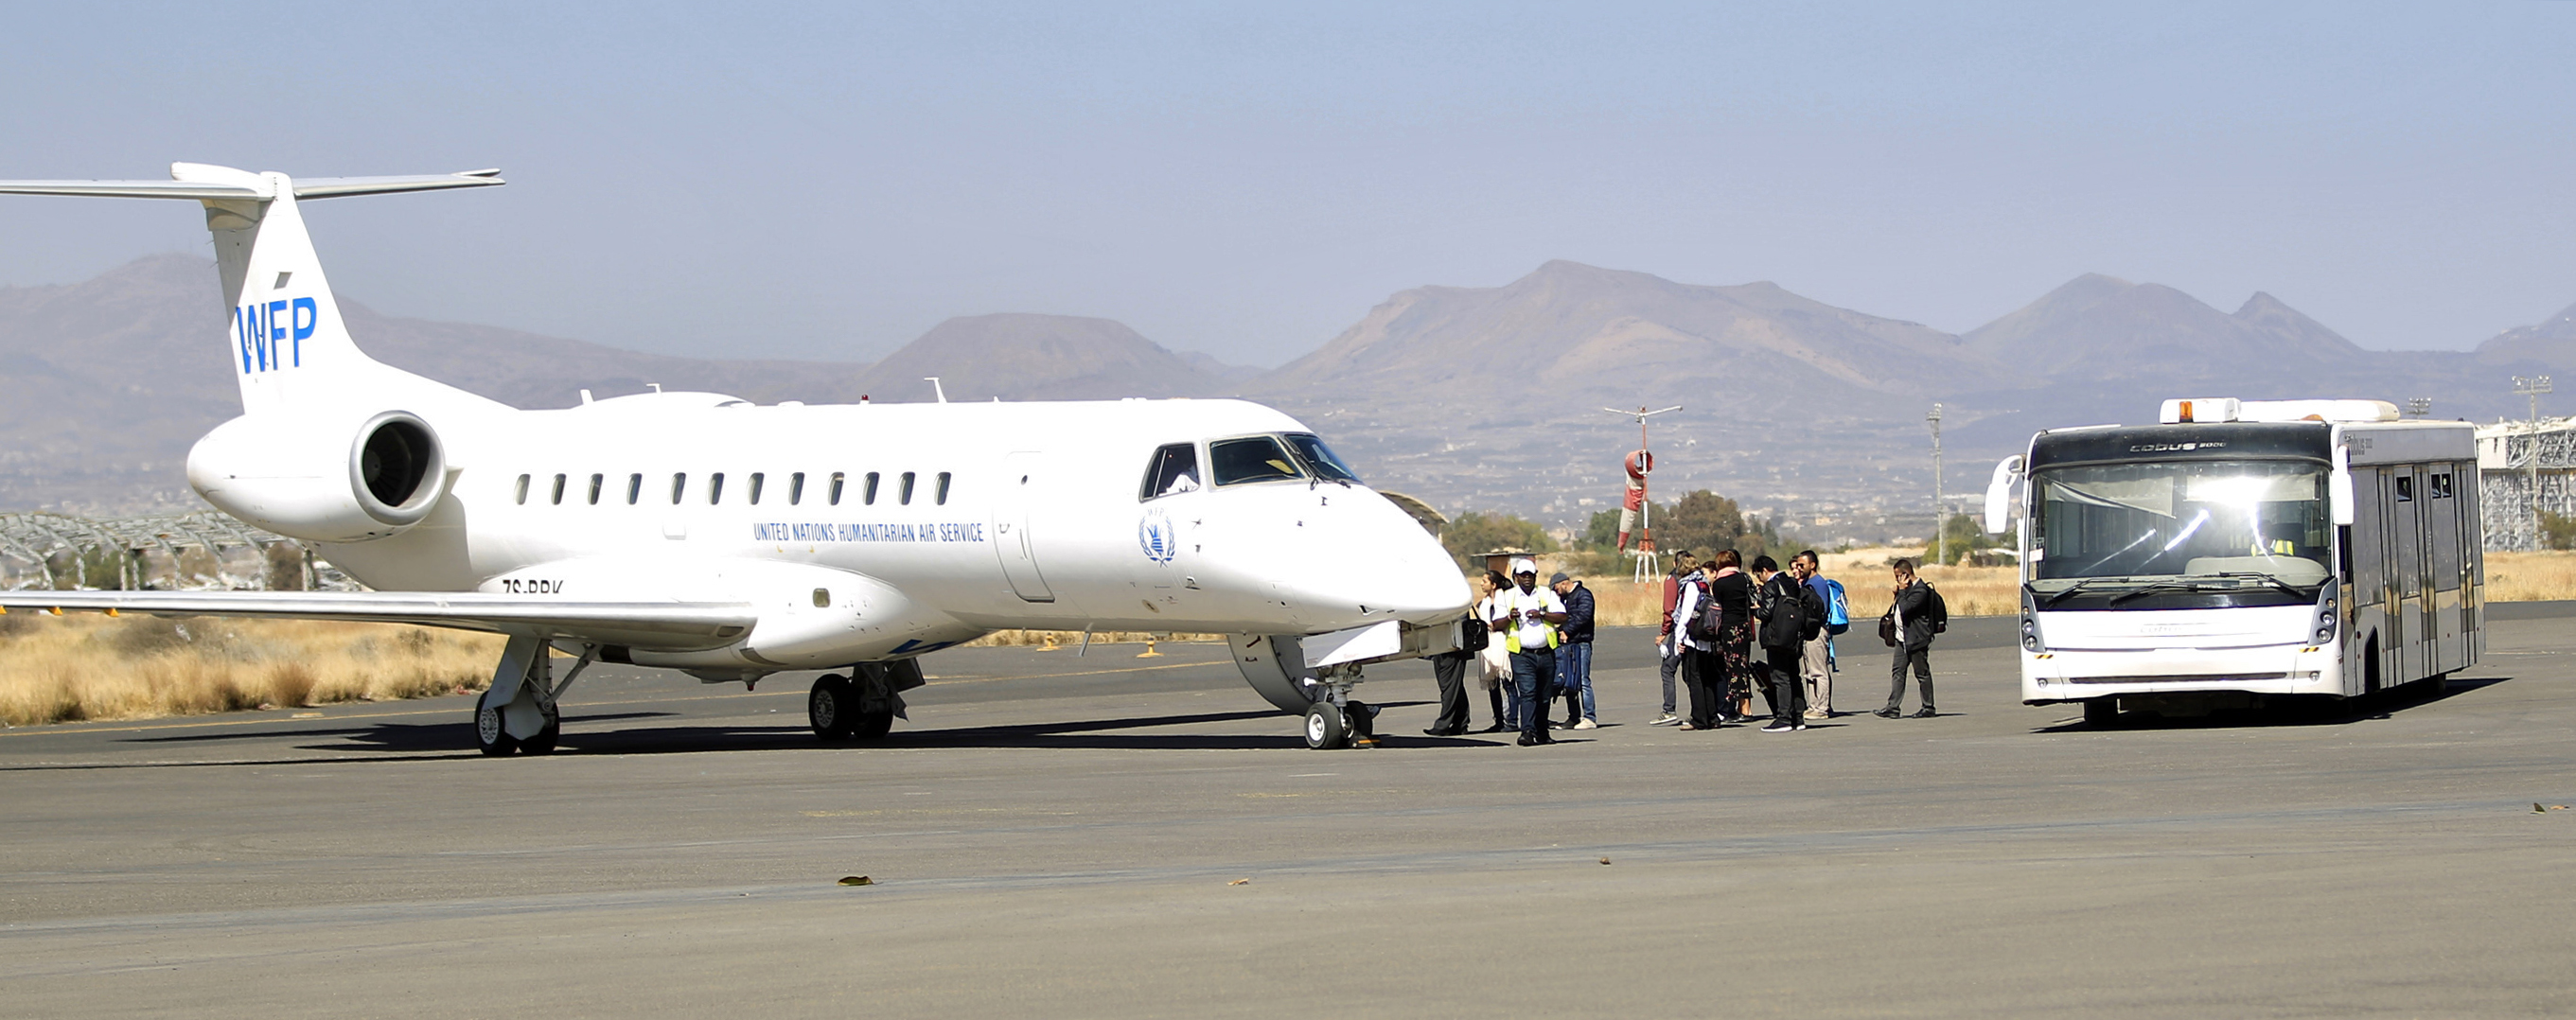 أول رحلة جوية لعودة عمال الإغاثة إلى اليمن